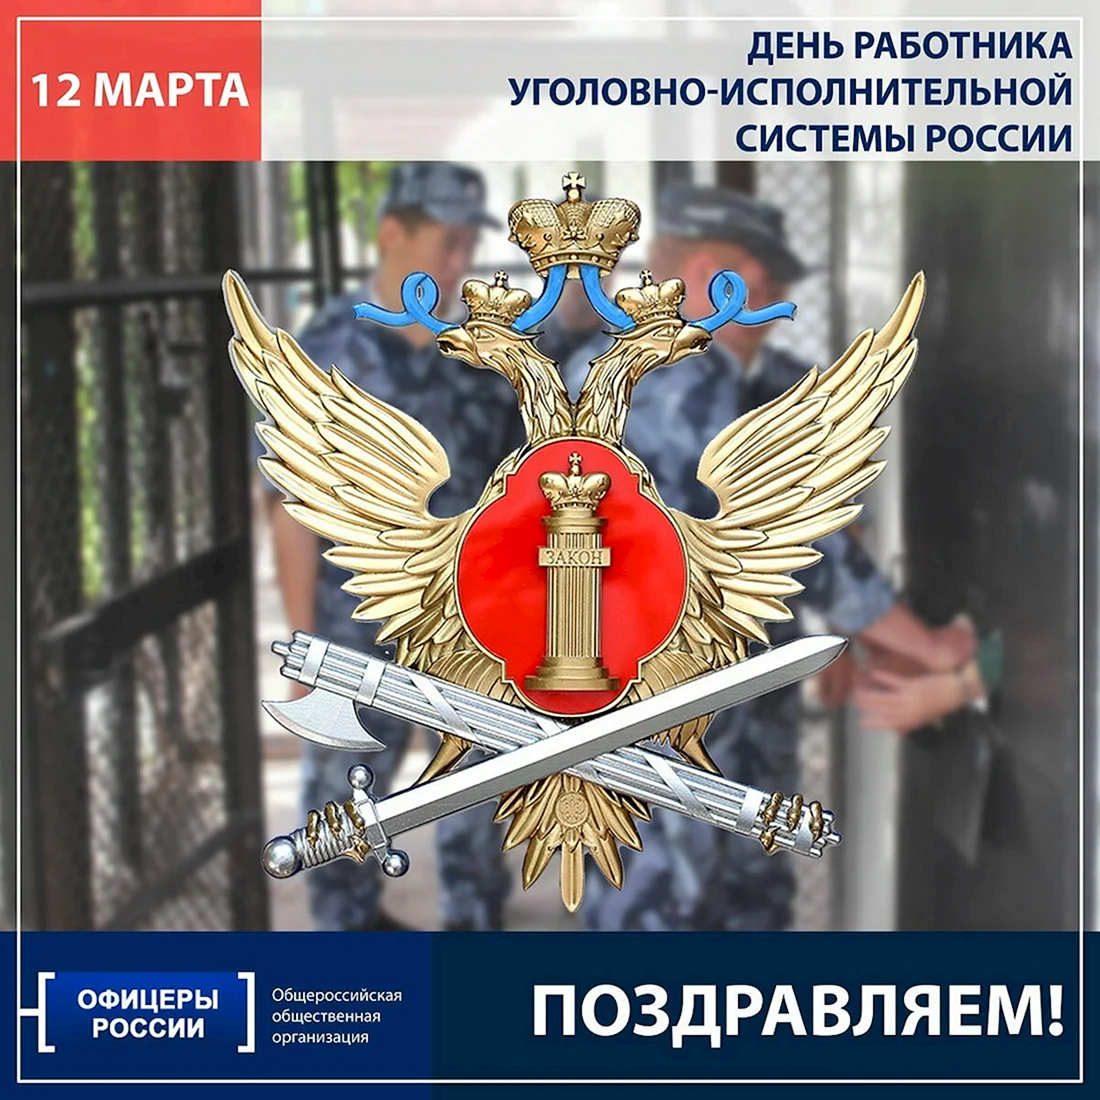 12 Марта день работника уголовно-исполнительной системы России